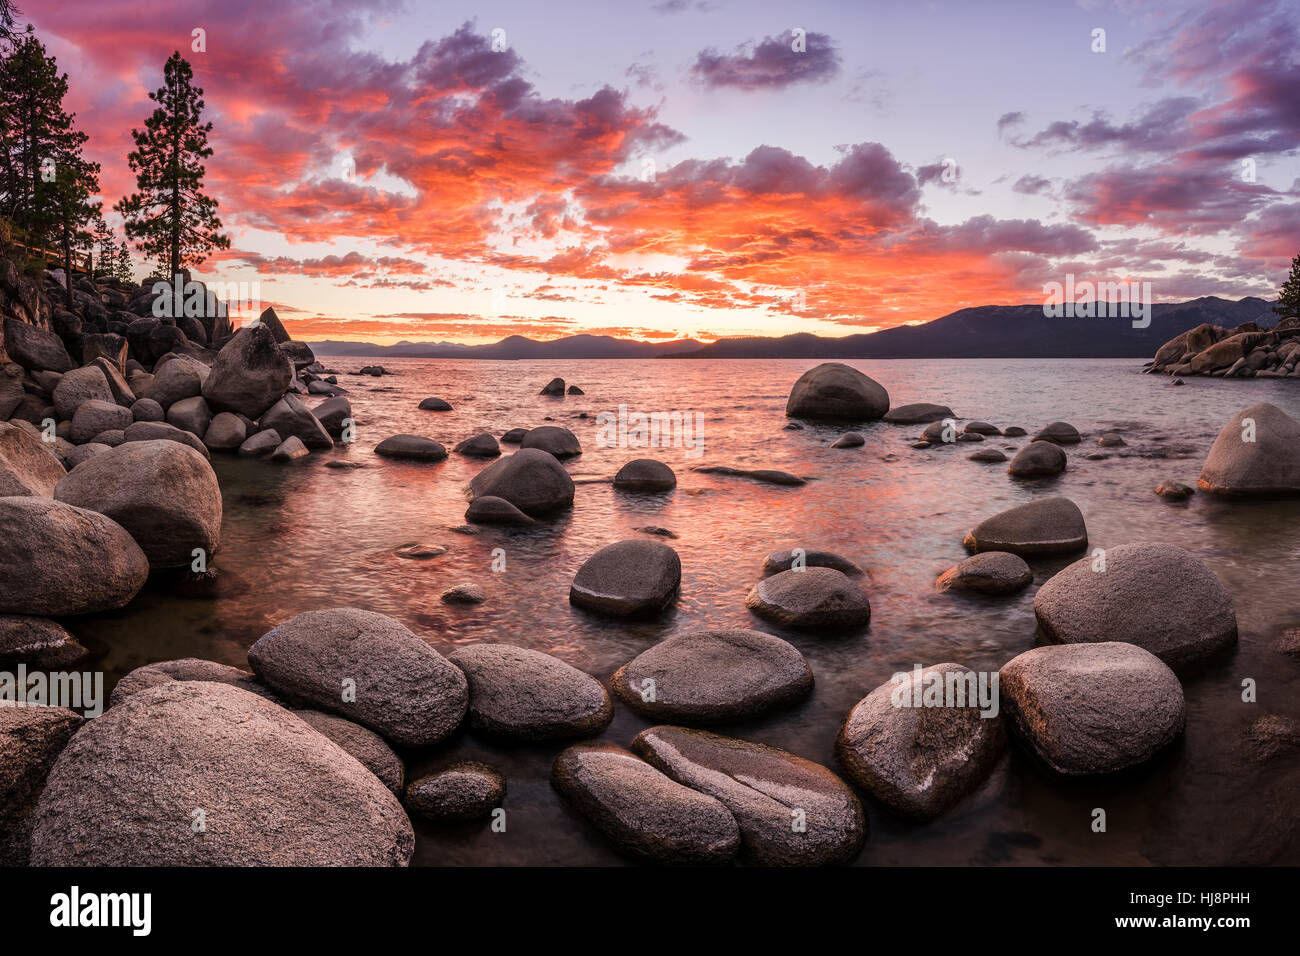 Lake Tahoe landscape at sunset, Nevada, United States Stock Photo